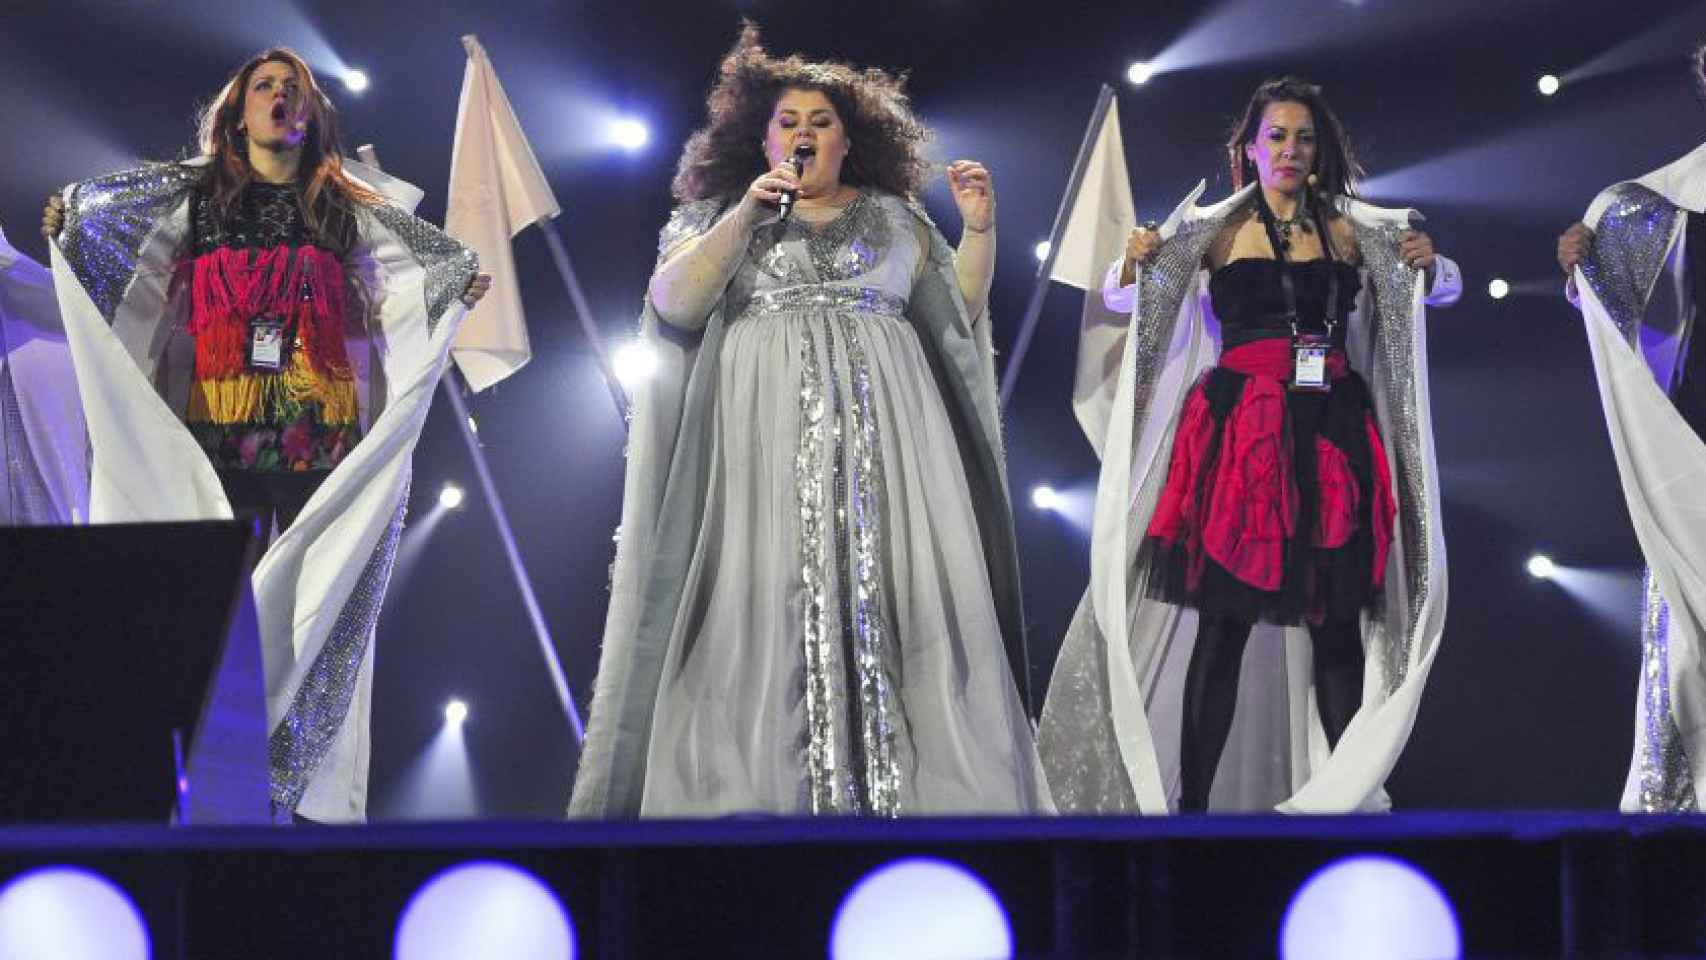 Segunda jornada de ensayos del Festival de Eurovisión 2015